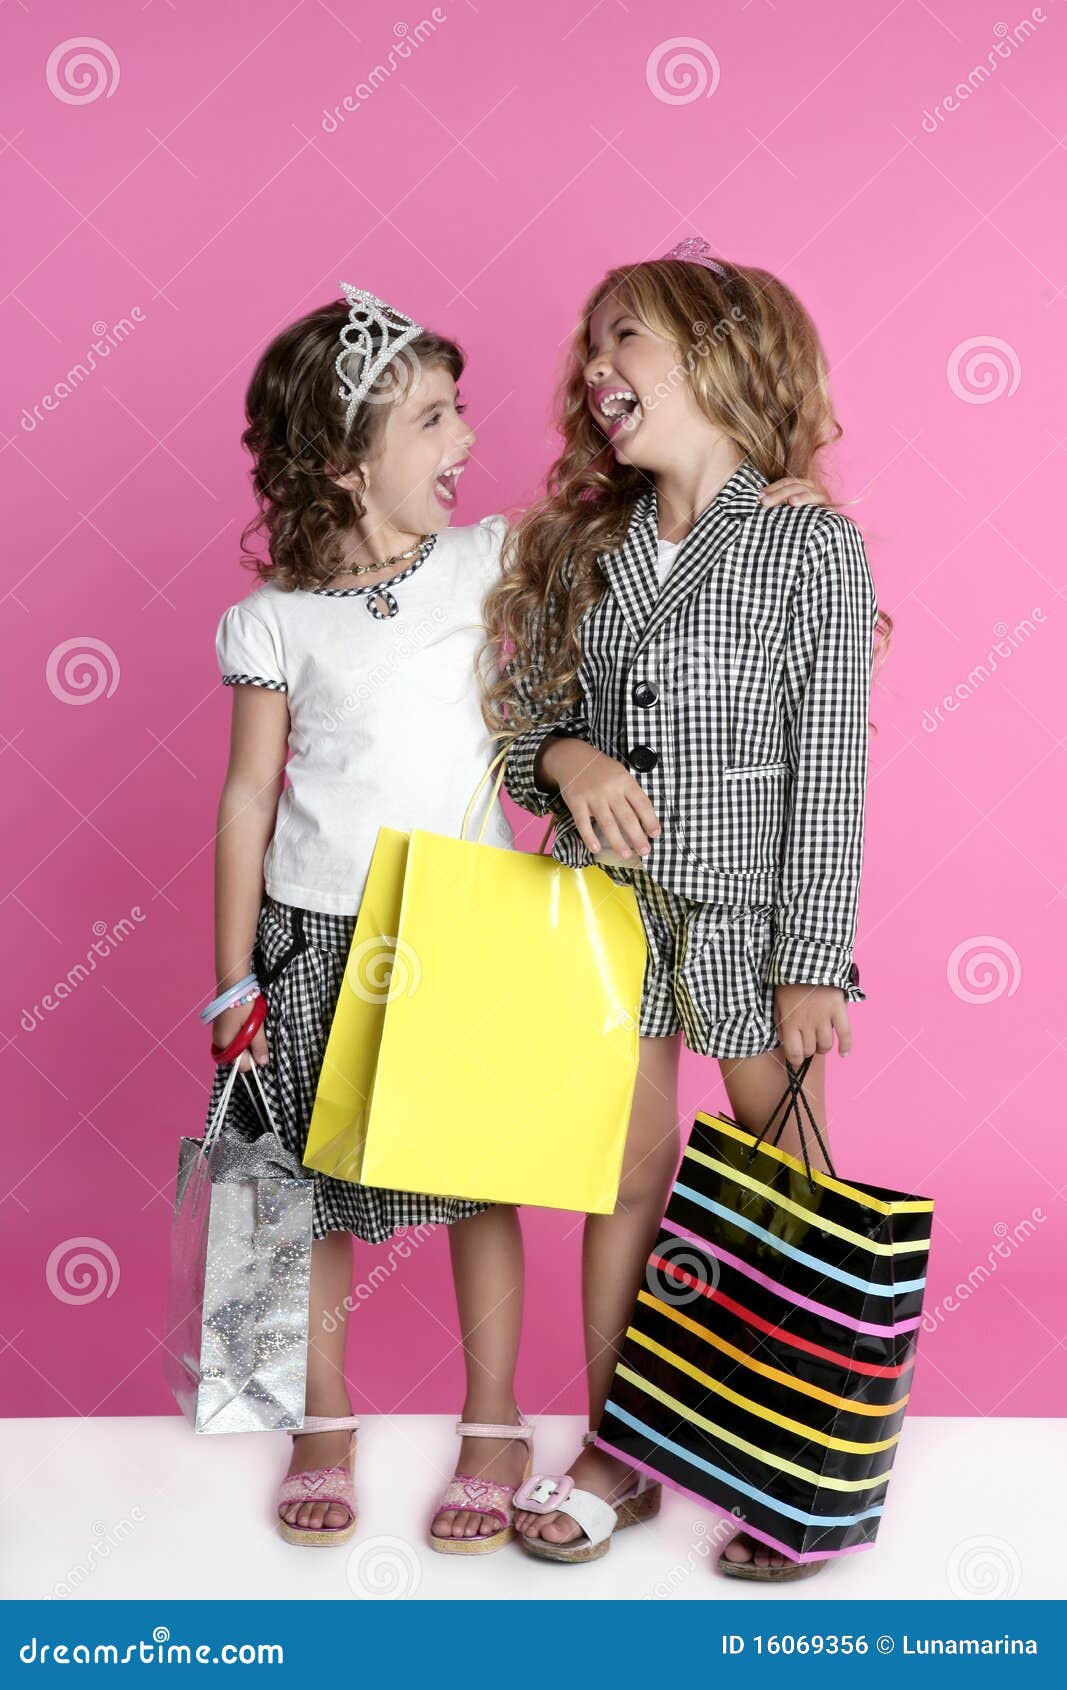 little shopper humor shopaholic girls